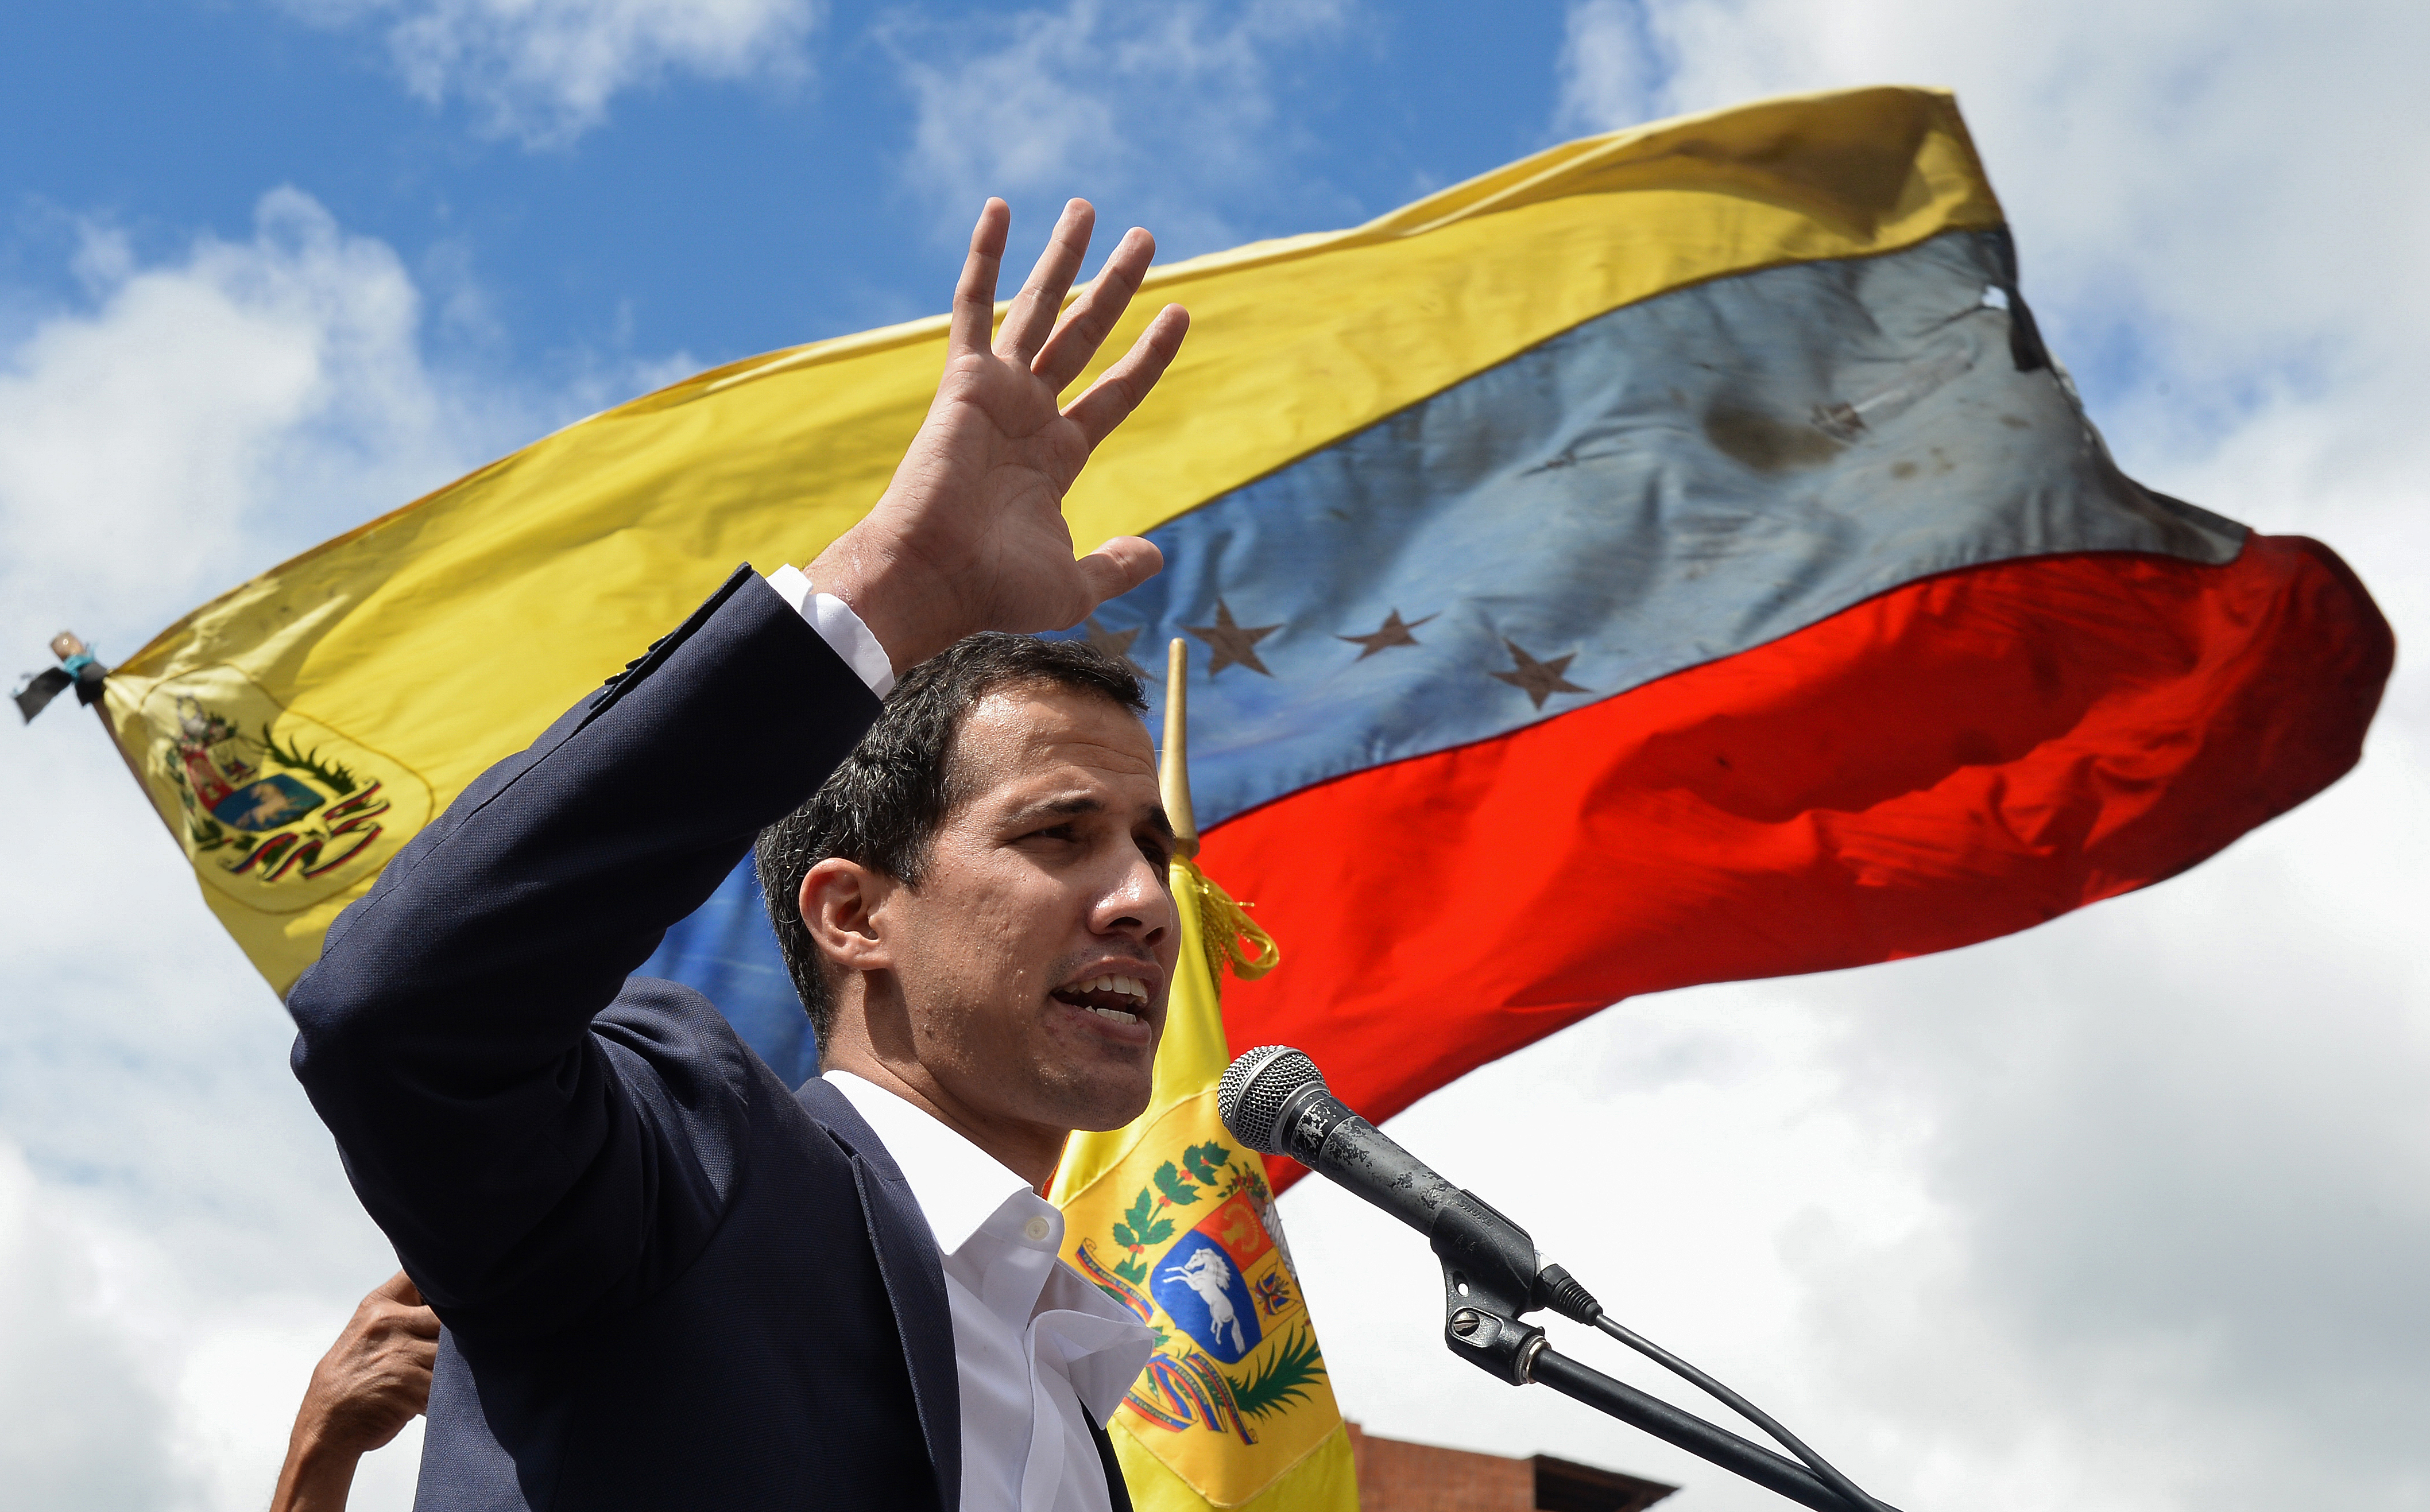 Washington ismét egy dél-amerikai államban akciózik, de a végén talán megszabadul Venezuela és a világ is egy sötét diktátortól